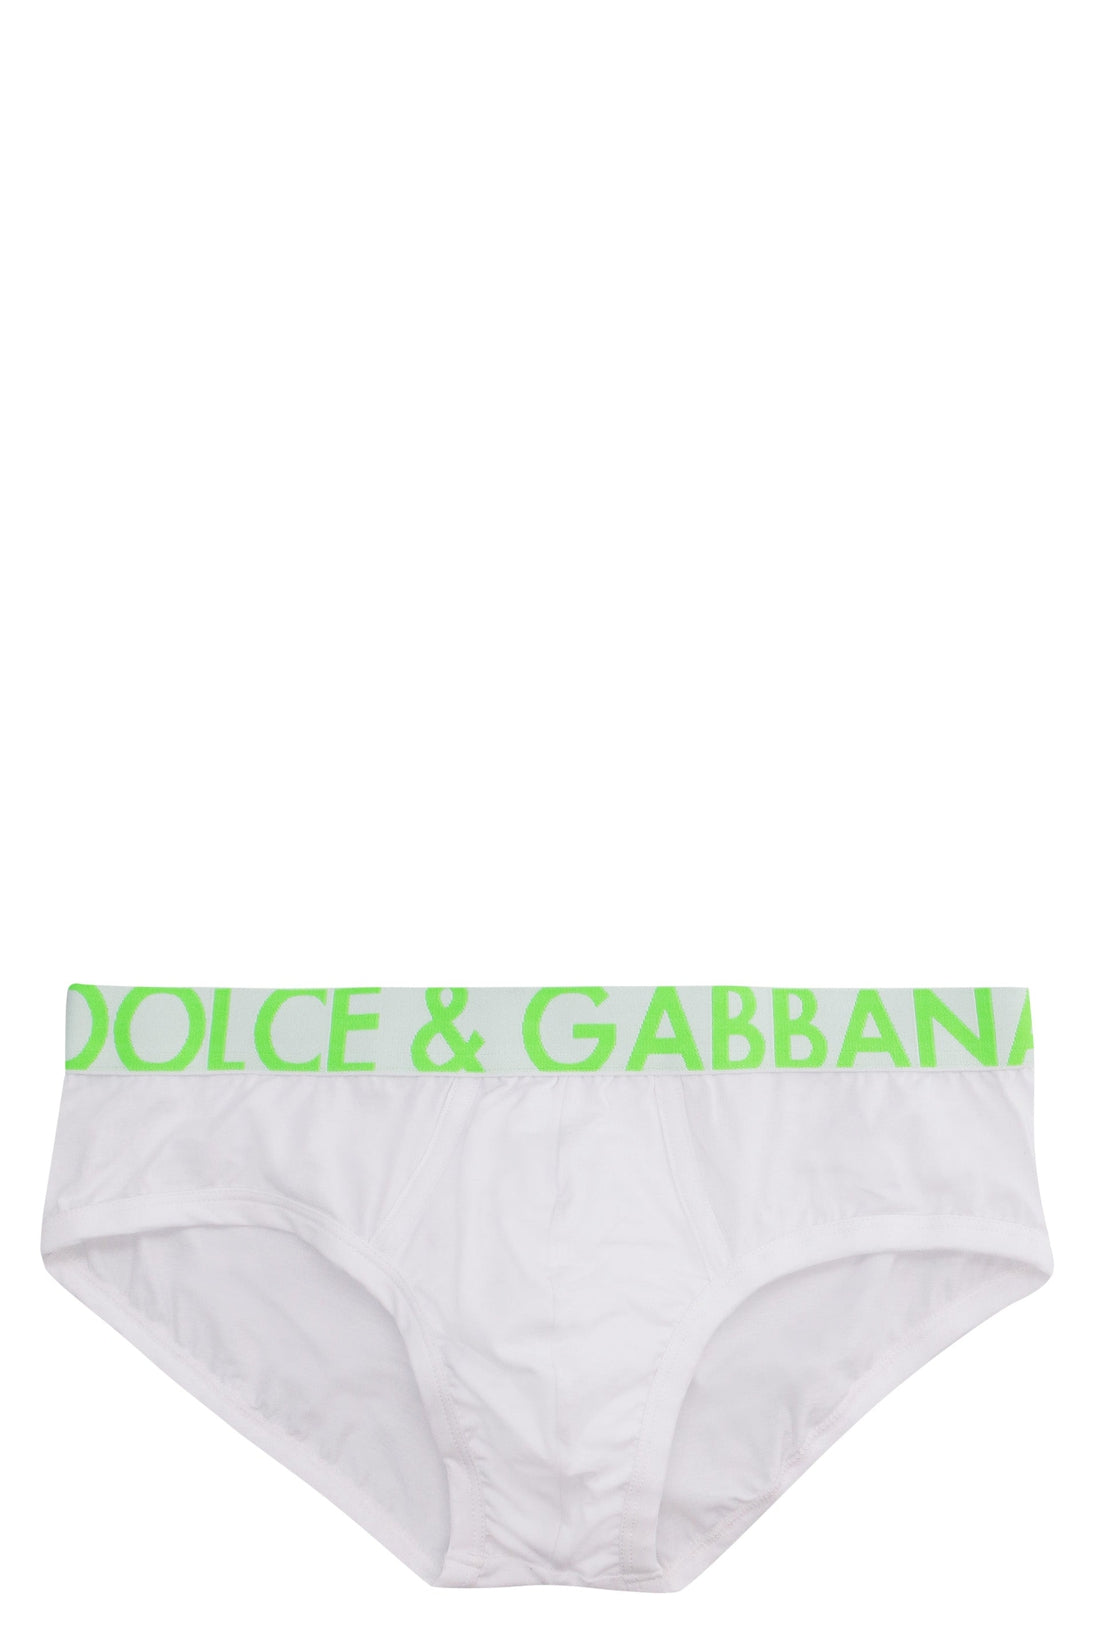 Dolce & Gabbana-OUTLET-SALE-Brando stretch cotton briefs-ARCHIVIST